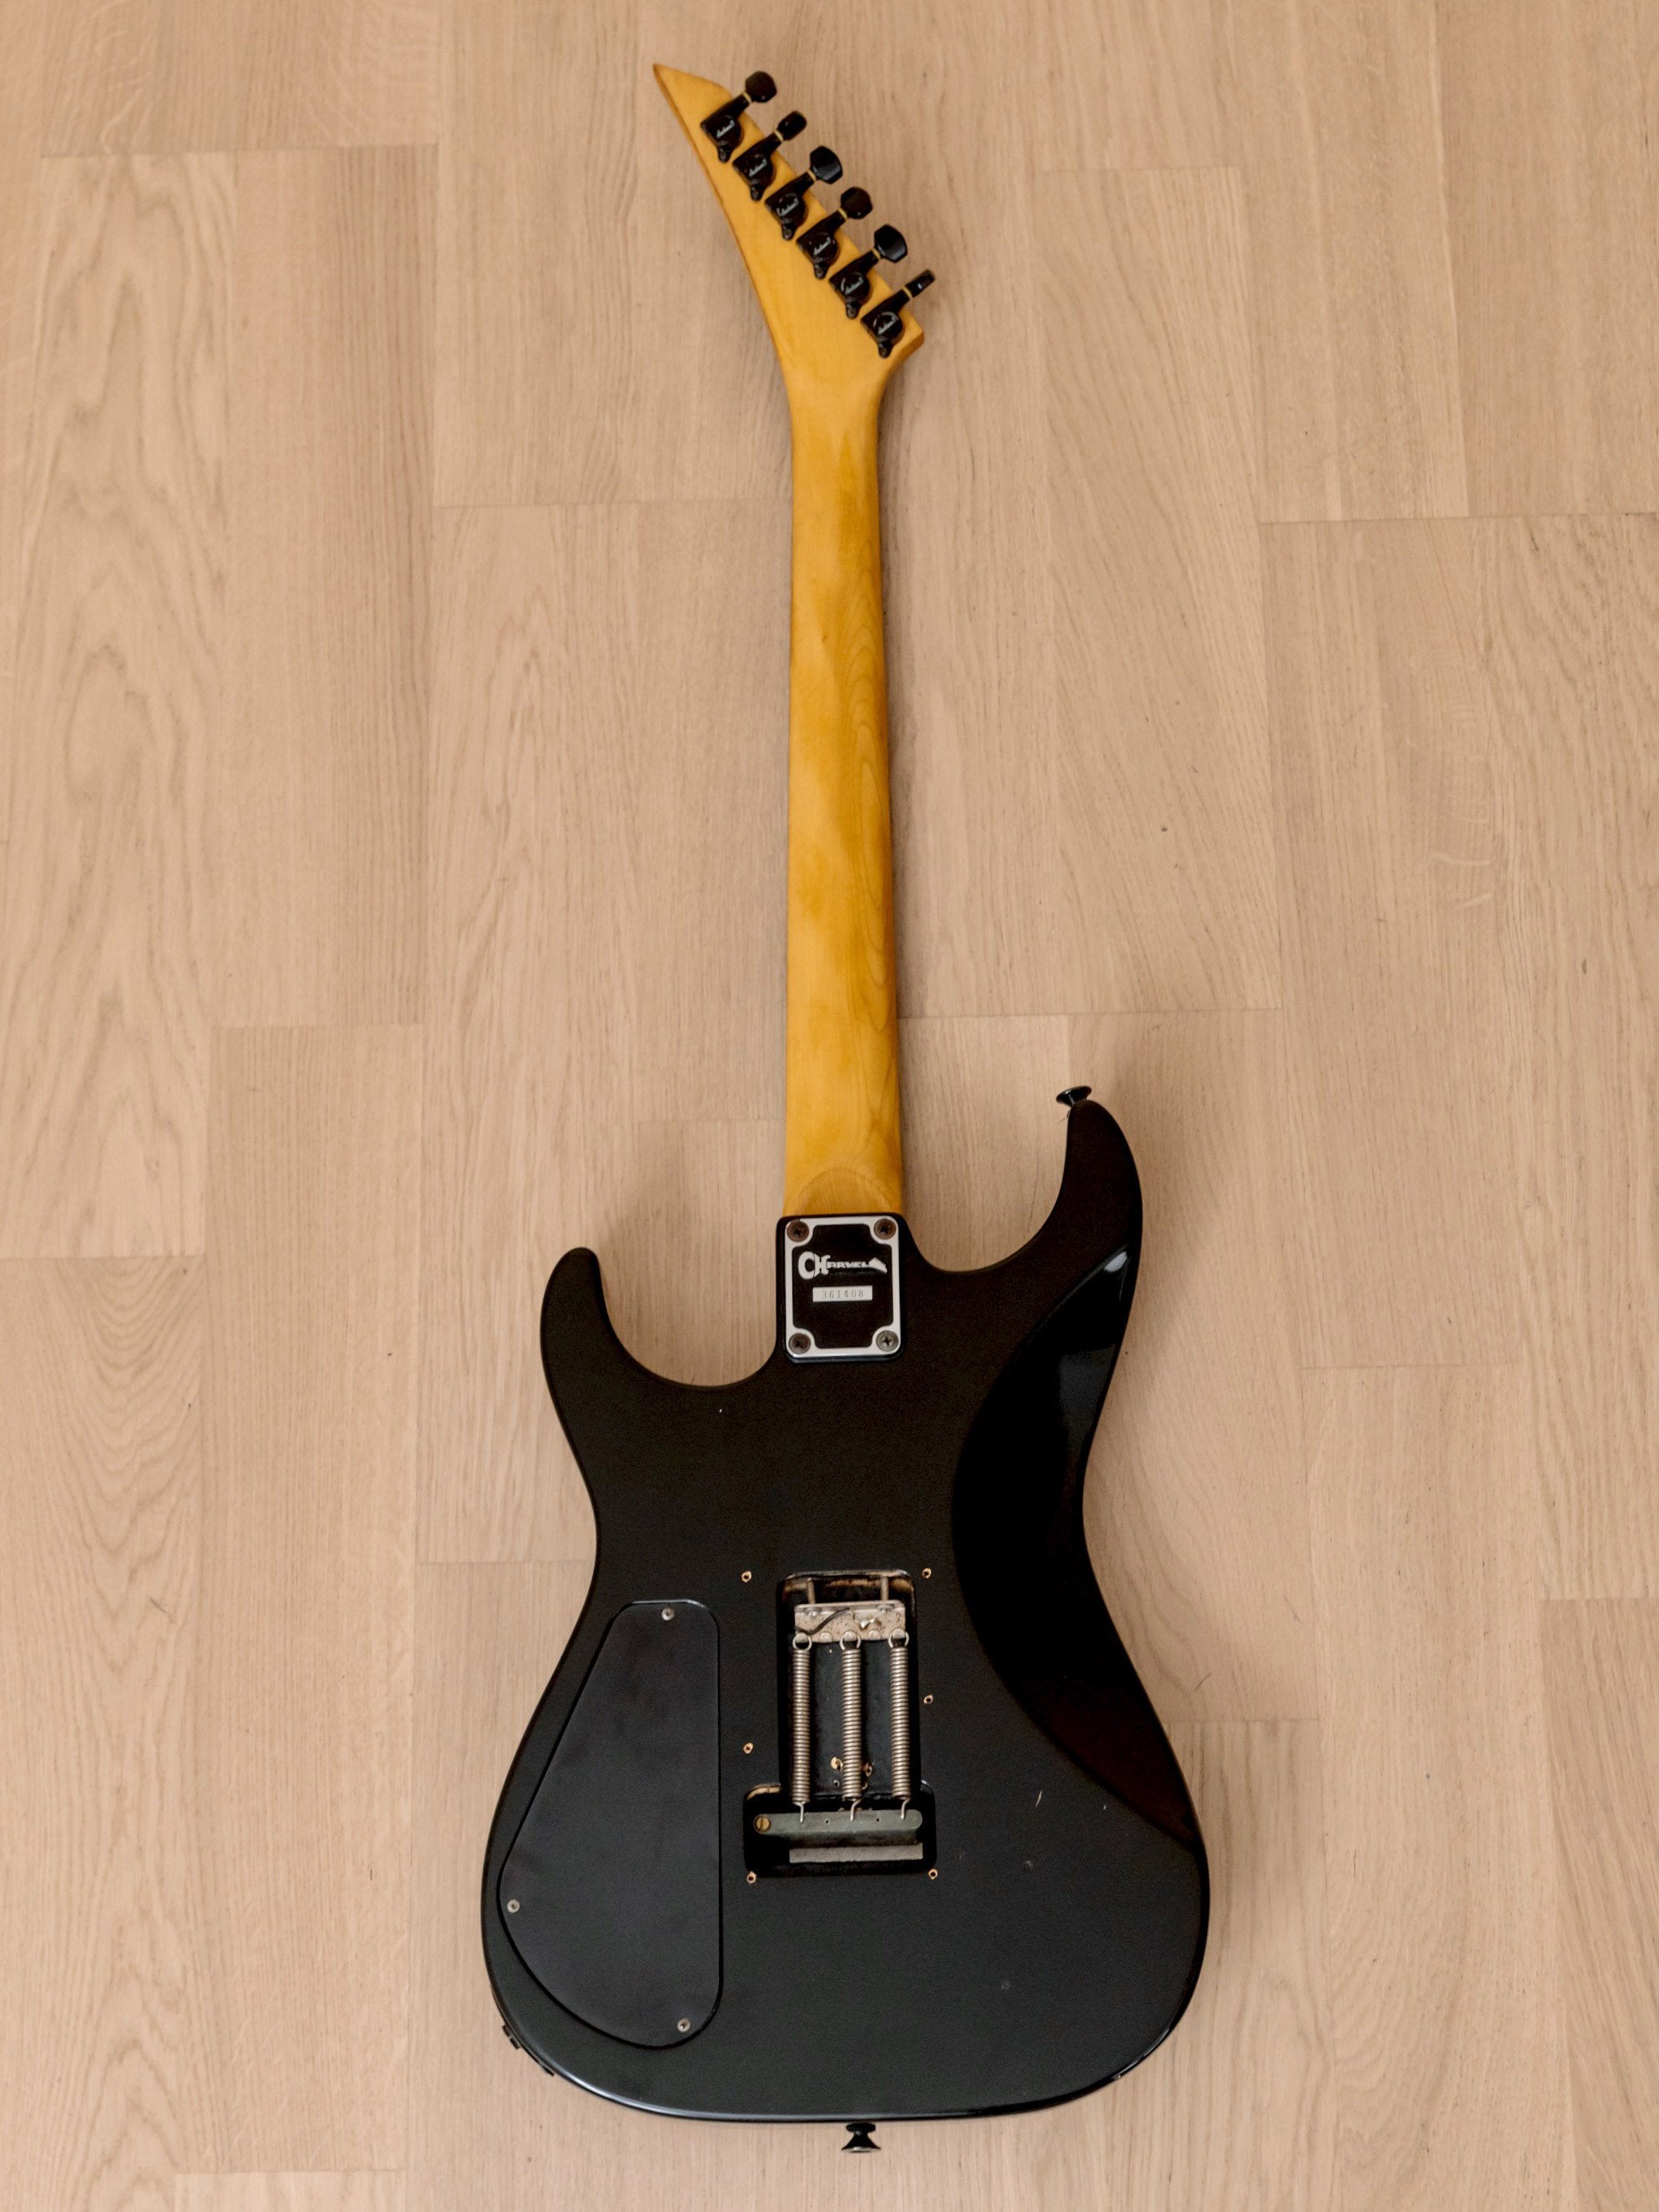 1993 Charvel by Jackson DK-065-SSH Superstrat Vintage Guitar Black, Model 3, Japan